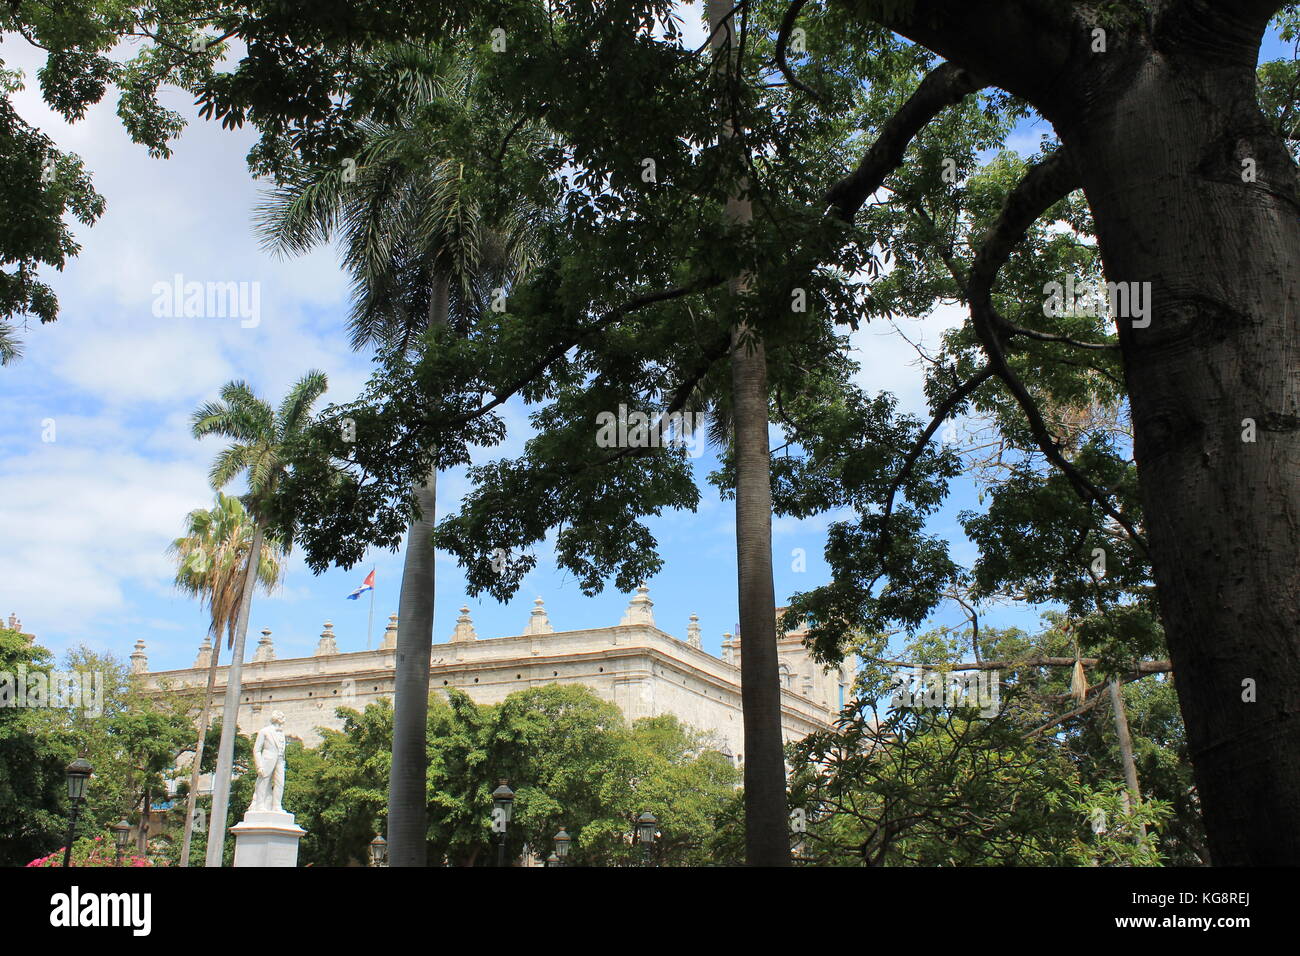 Regarder à travers les arbres dans un vieux bâtiment en pierre de style espagnol avec le drapeau cubain sur le toit, La Havane, Cuba. Banque D'Images